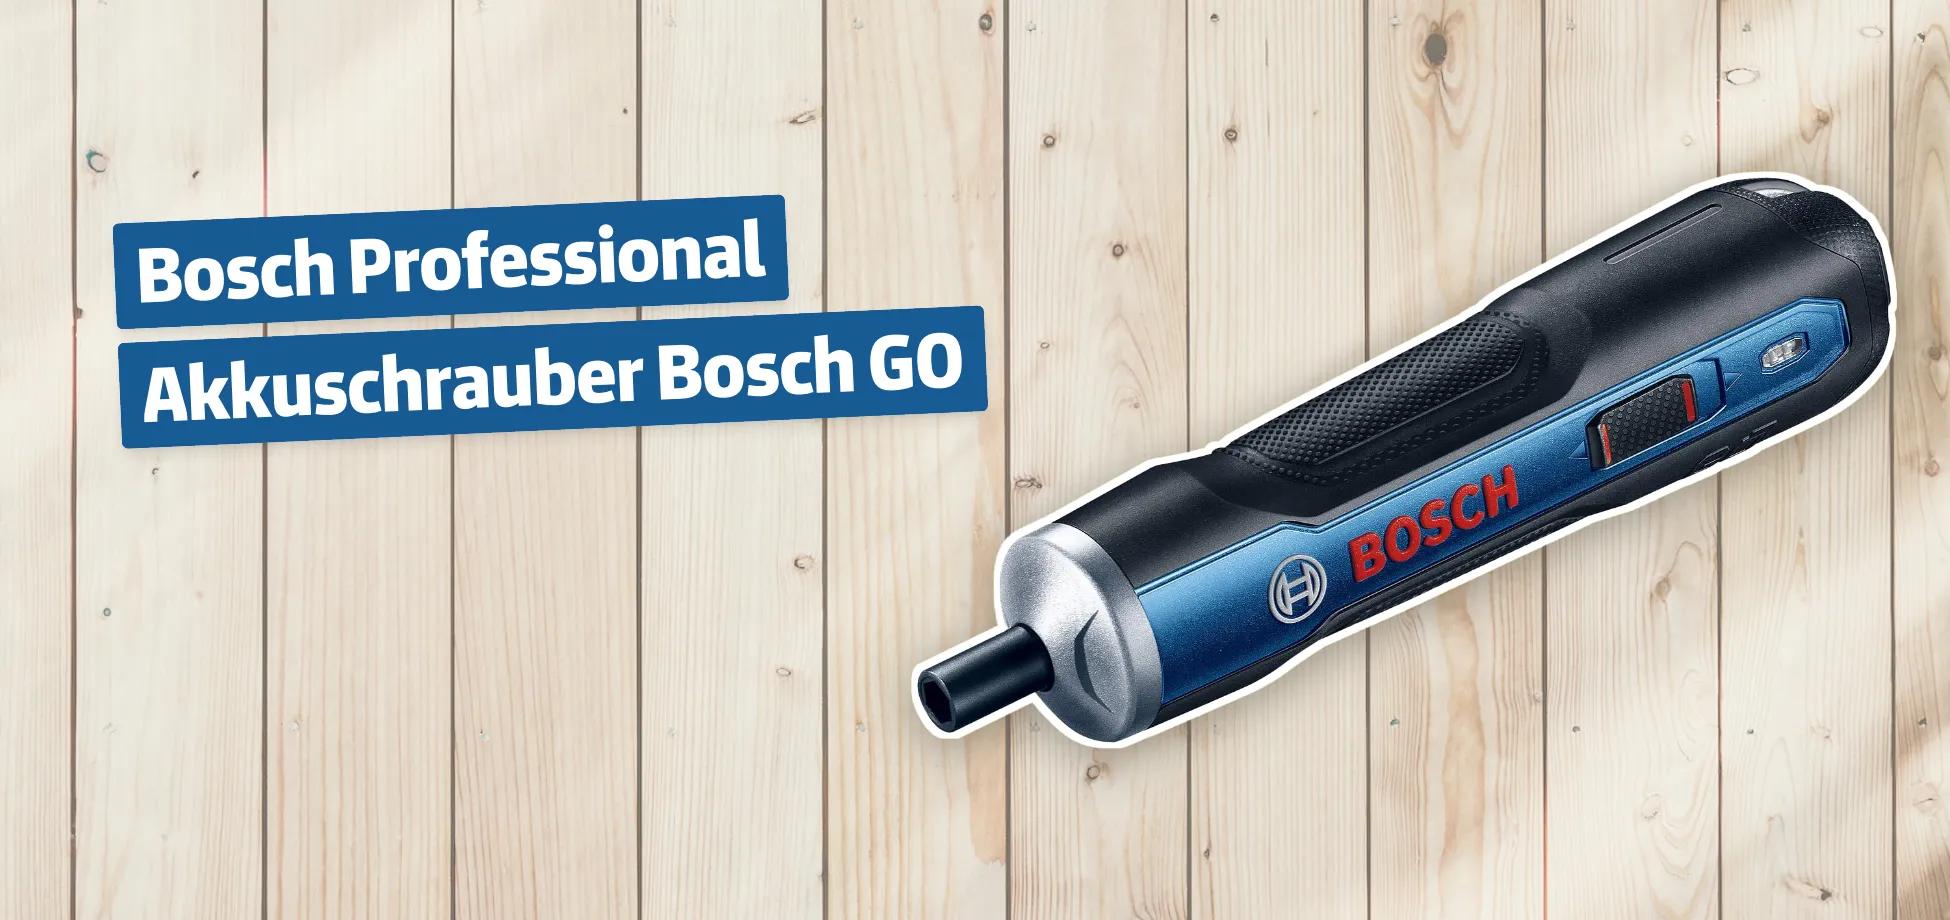 Bosch Professional Akkuschrauber Bosch GO